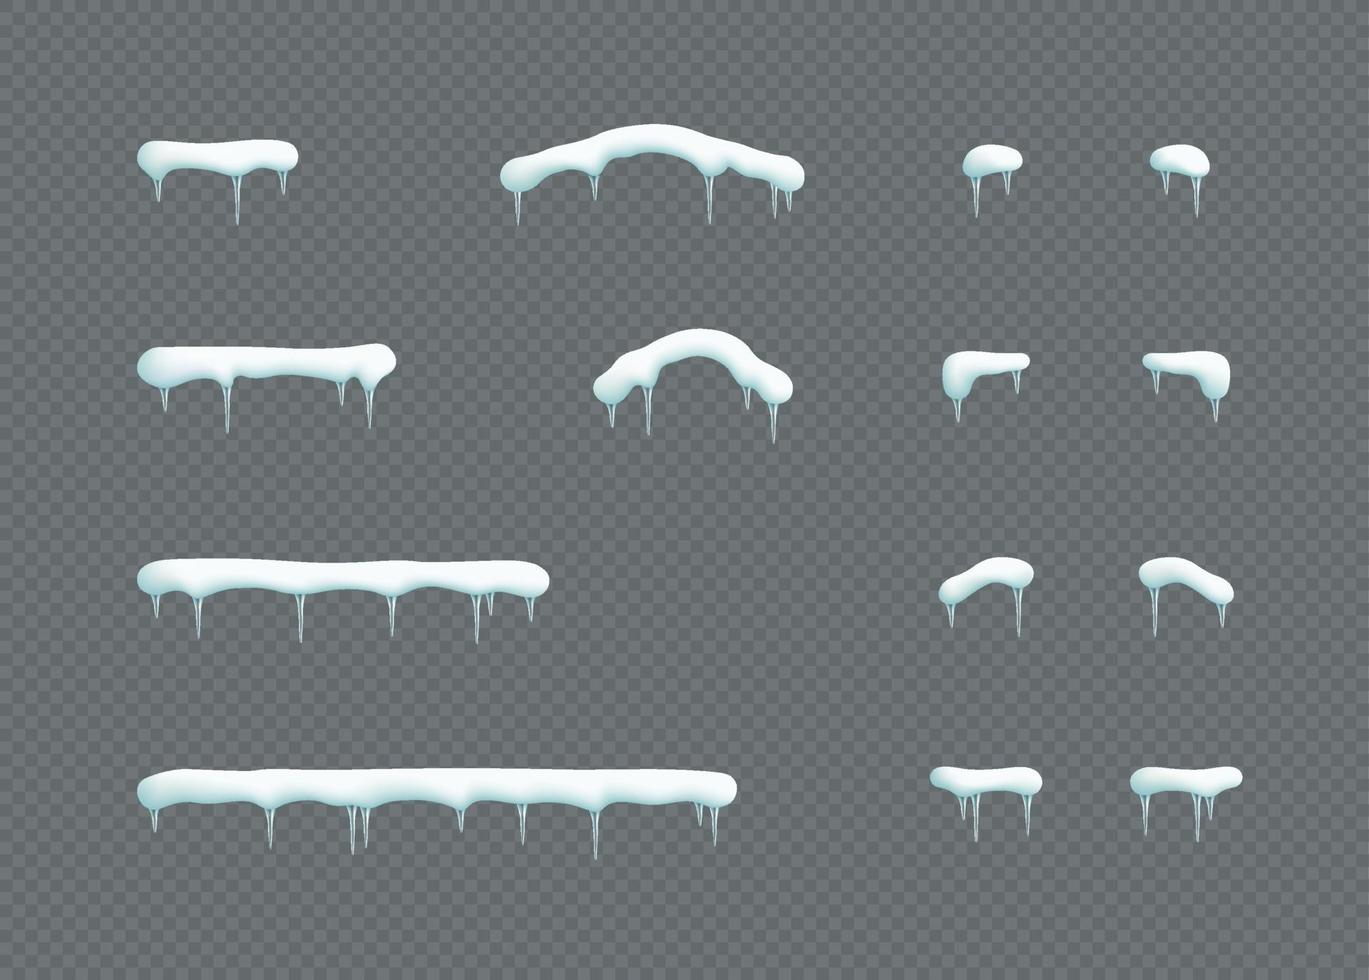 sneeuw pet toppers ijspegels Kerstmis winter elementen reeks vector